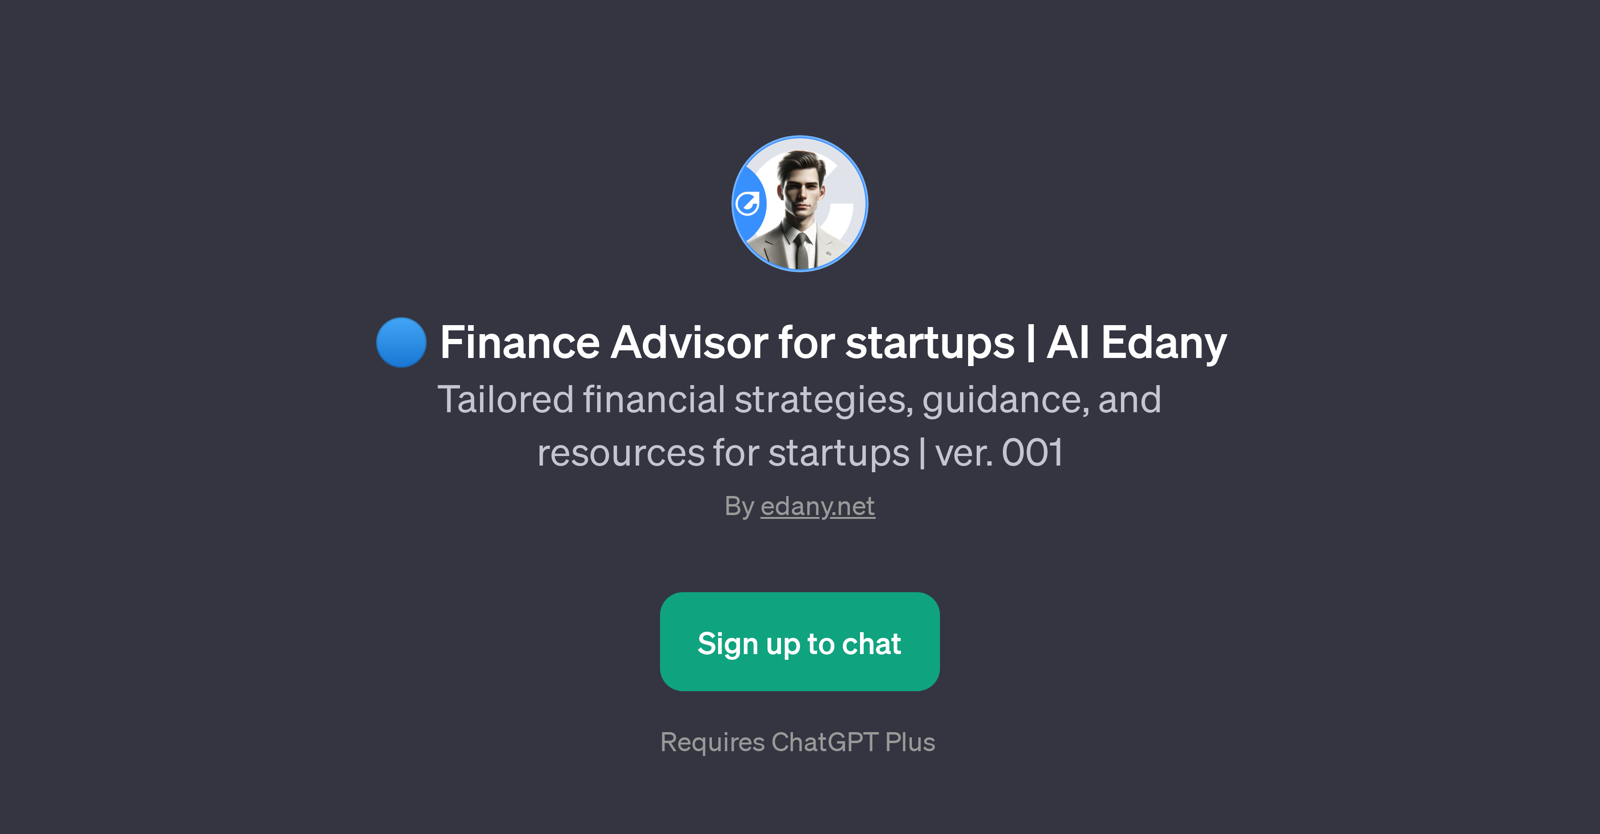 Finance Advisor for startups | AI Edany website